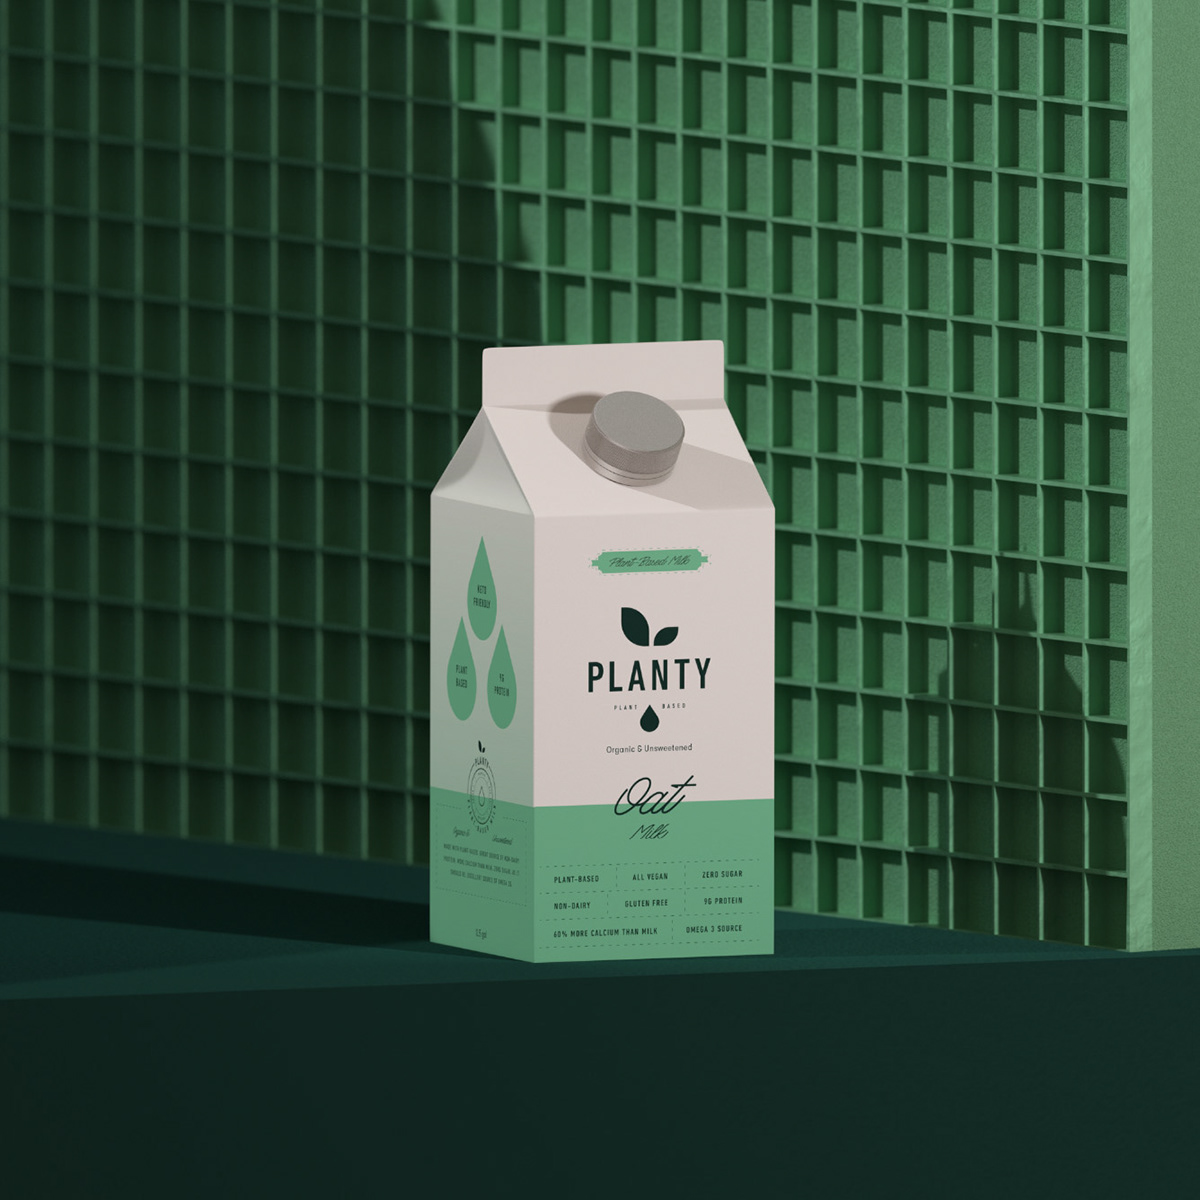  牛奶品牌标志设计和包装设计